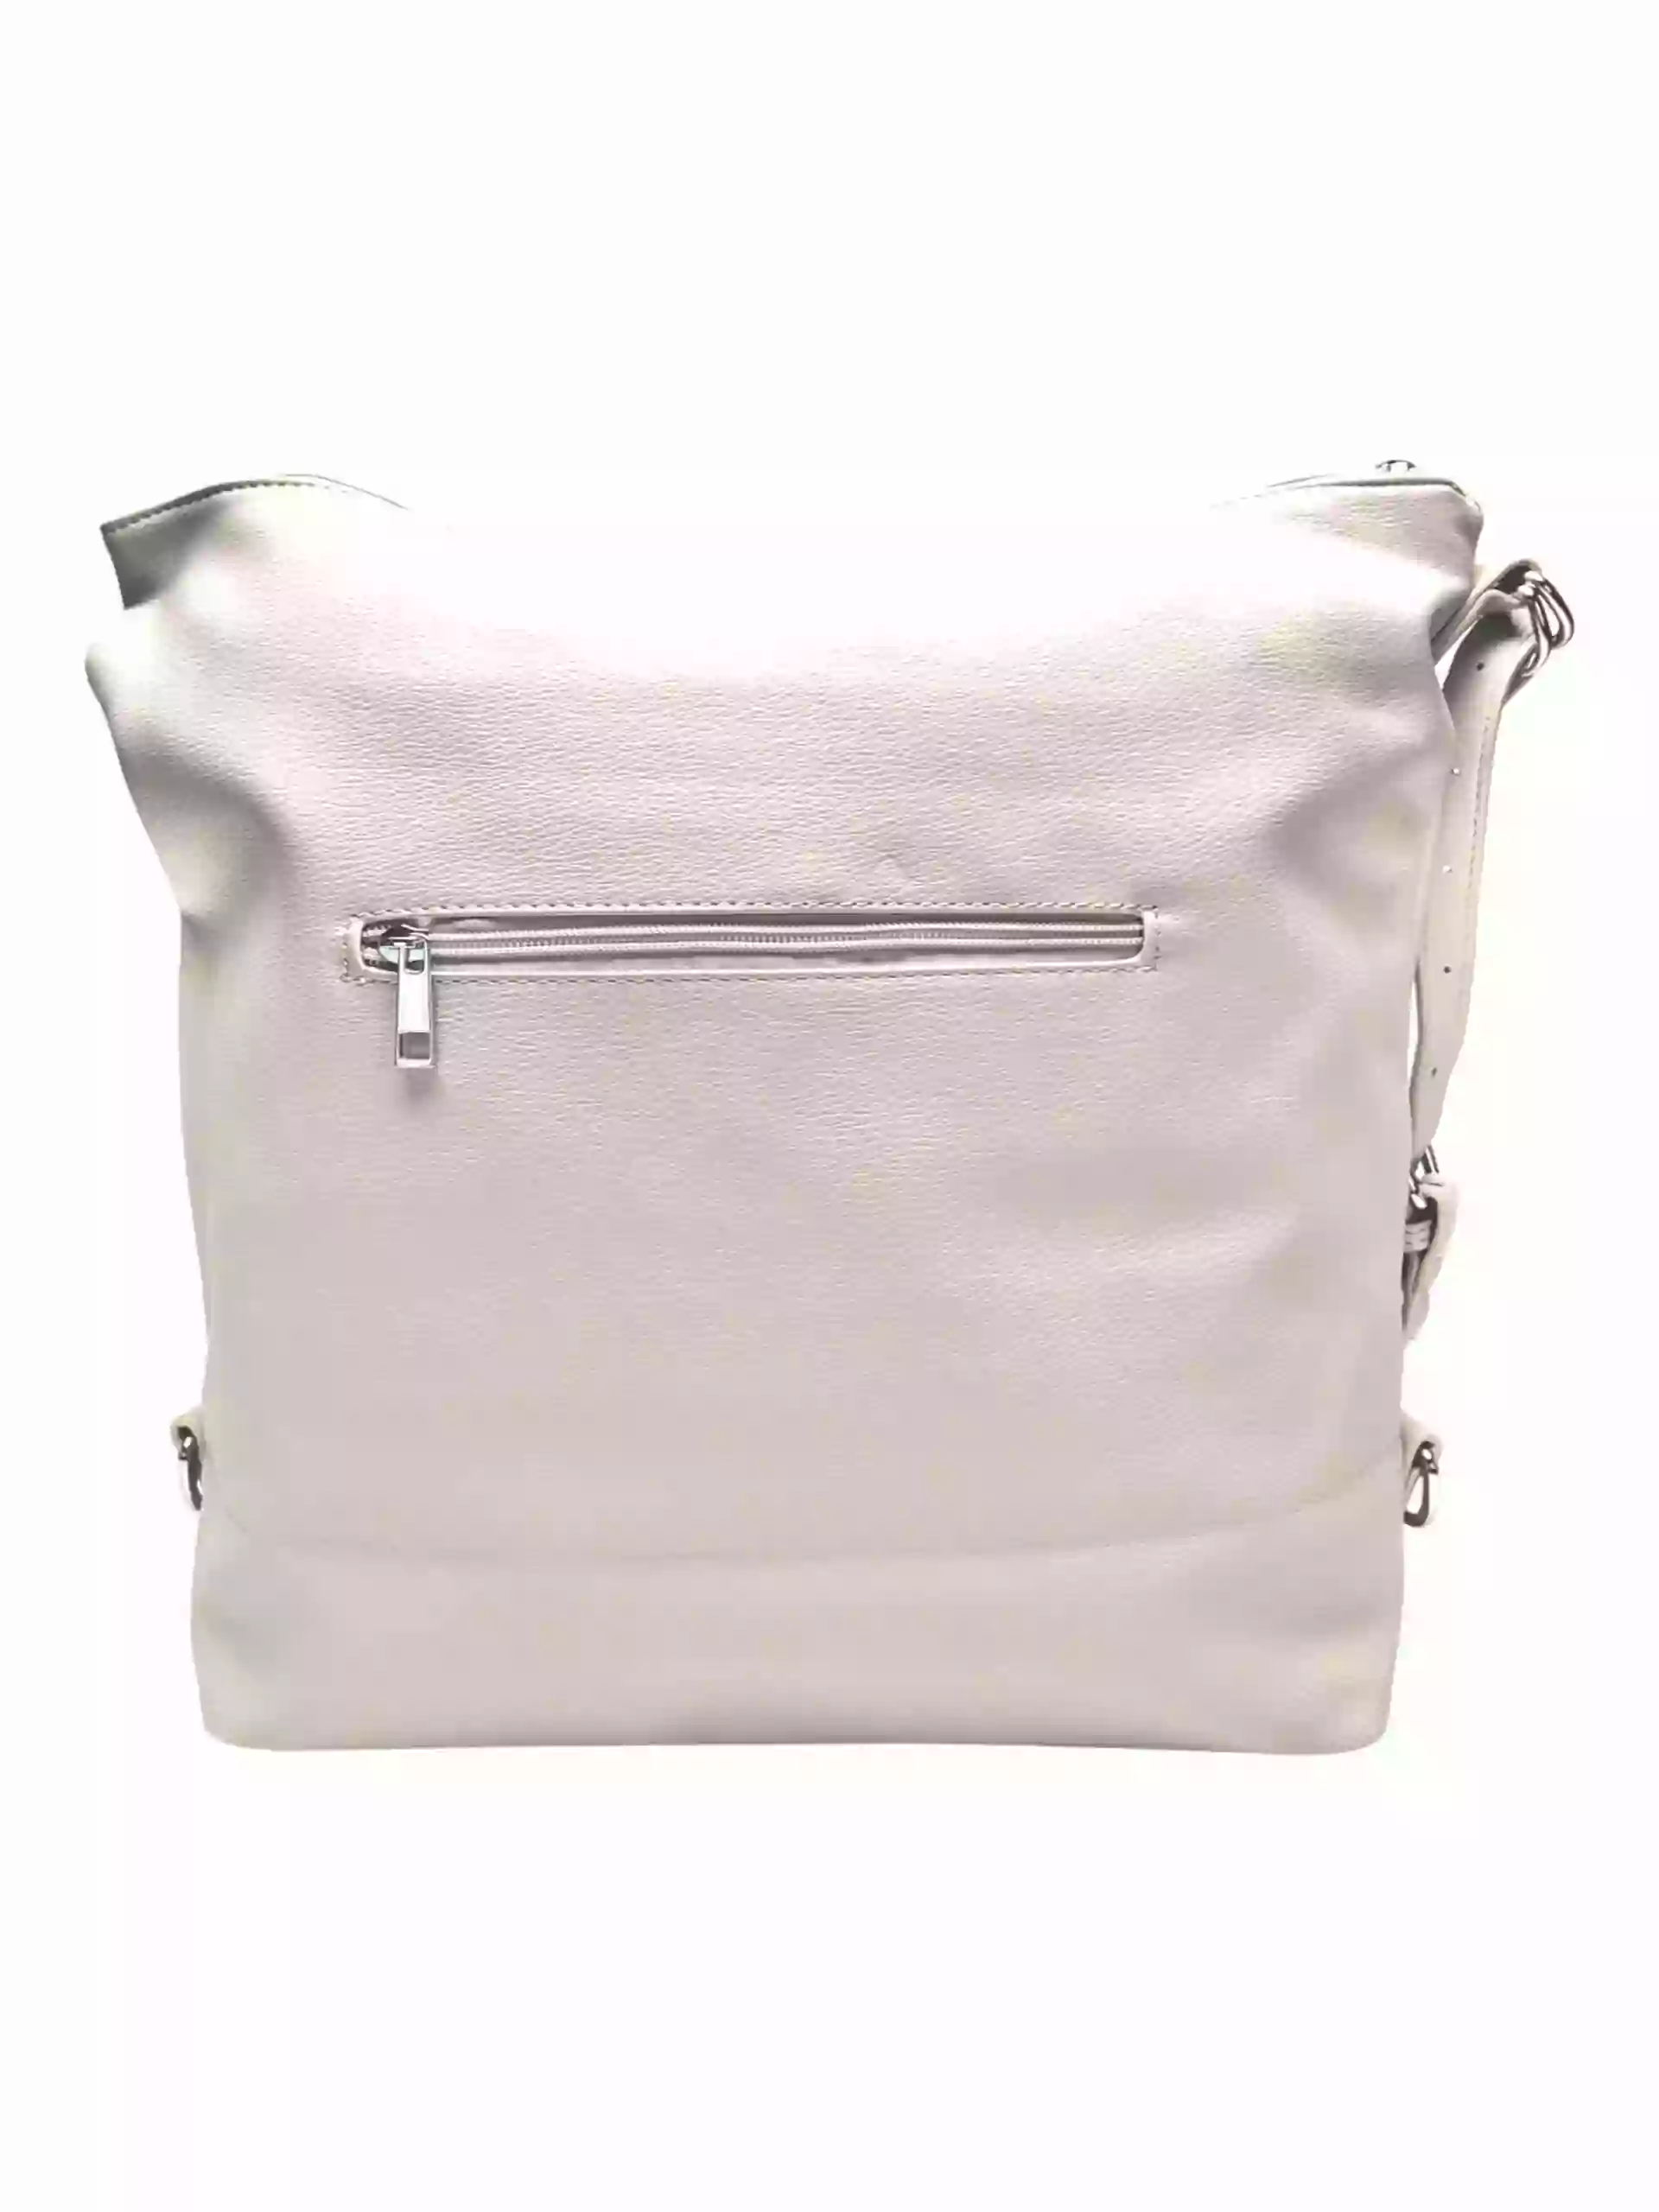 Velká perleťově bílá kabelka a batoh v jednom, Tapple, X368, zadní strana kabelko-batohu 2v1